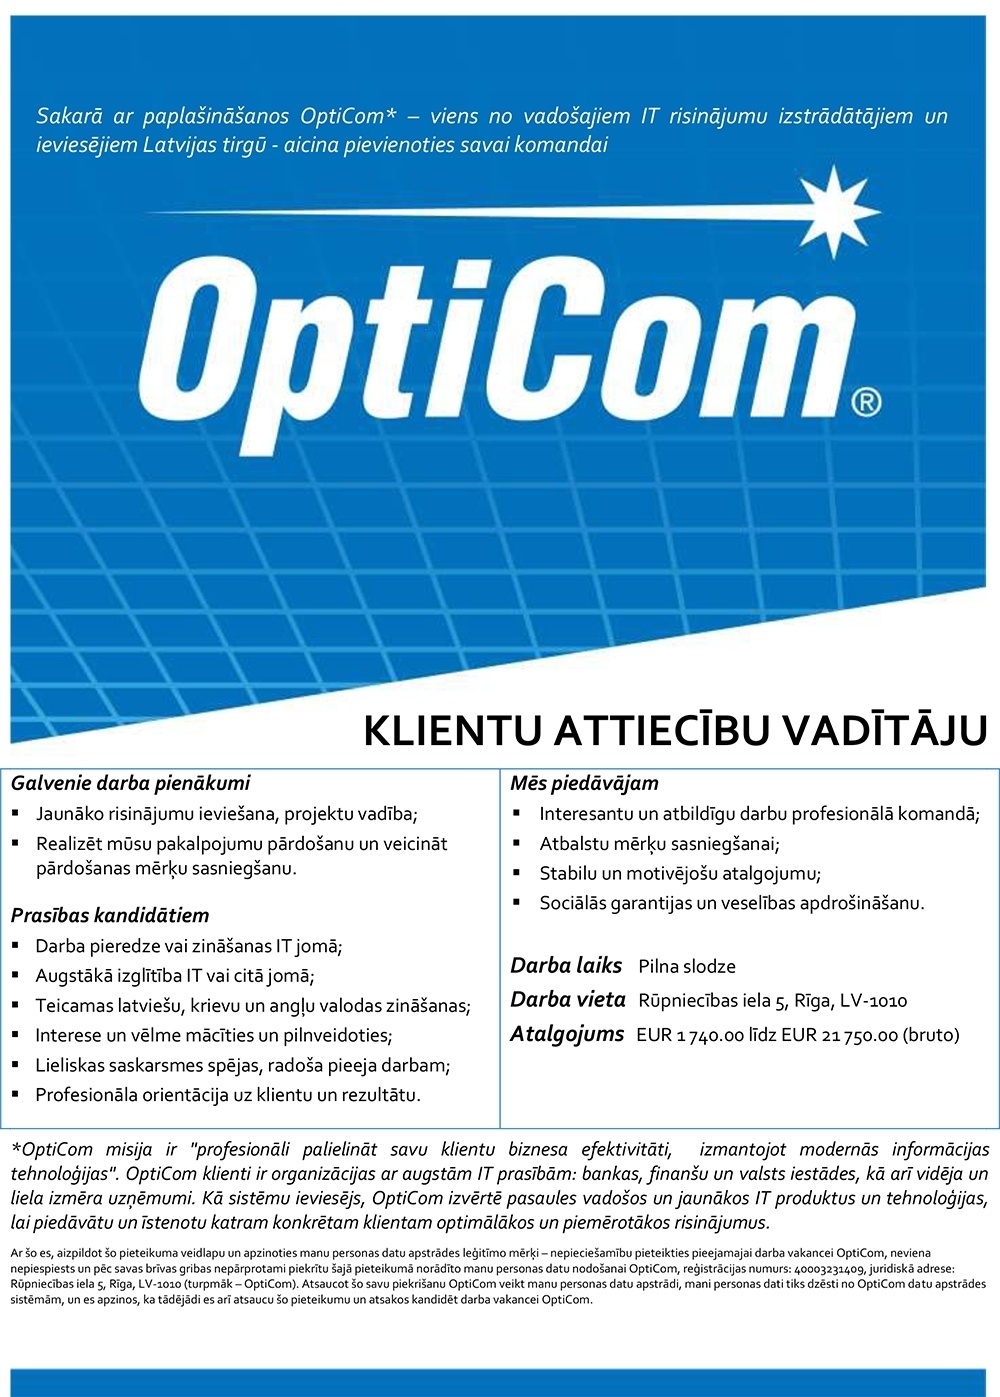 OptiCom, SIA Klientu attiecību vadītājs/-a